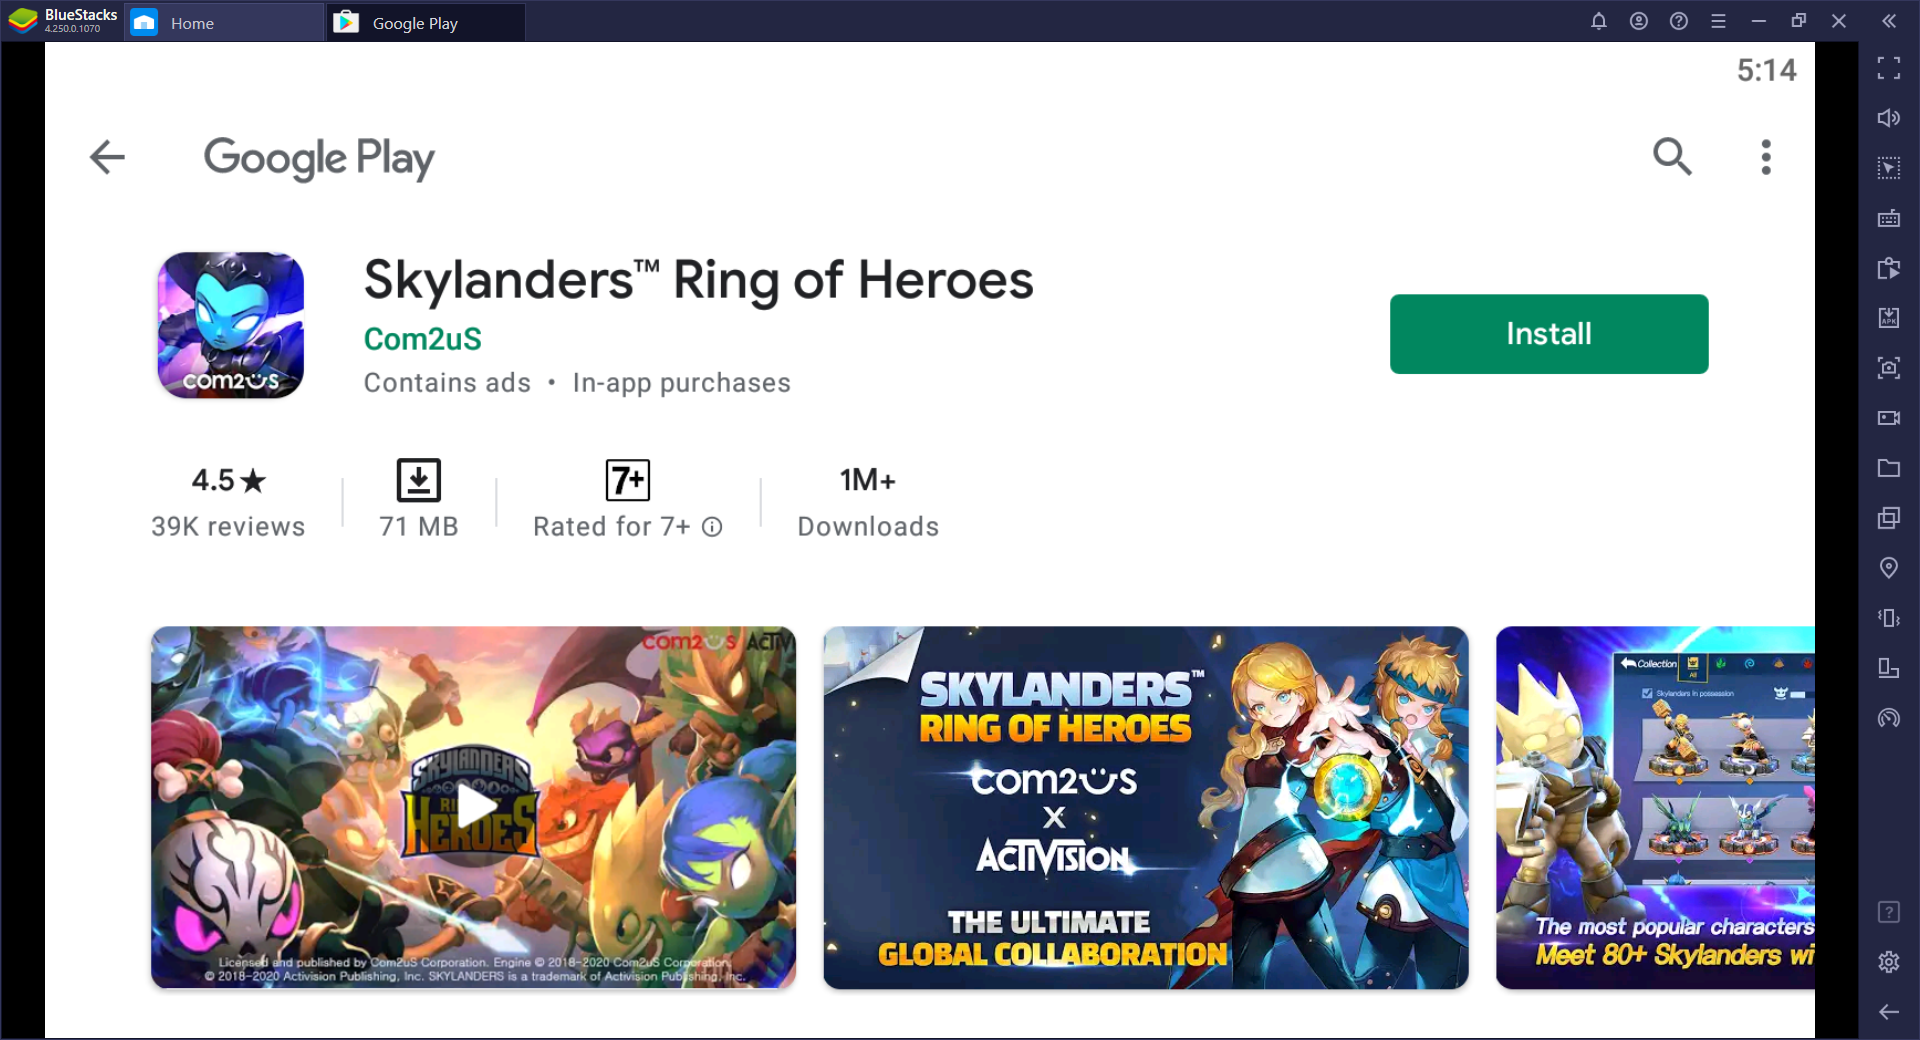 Cara Memainkan Skylanders Ring of Heroes di PC dengan BlueStacks